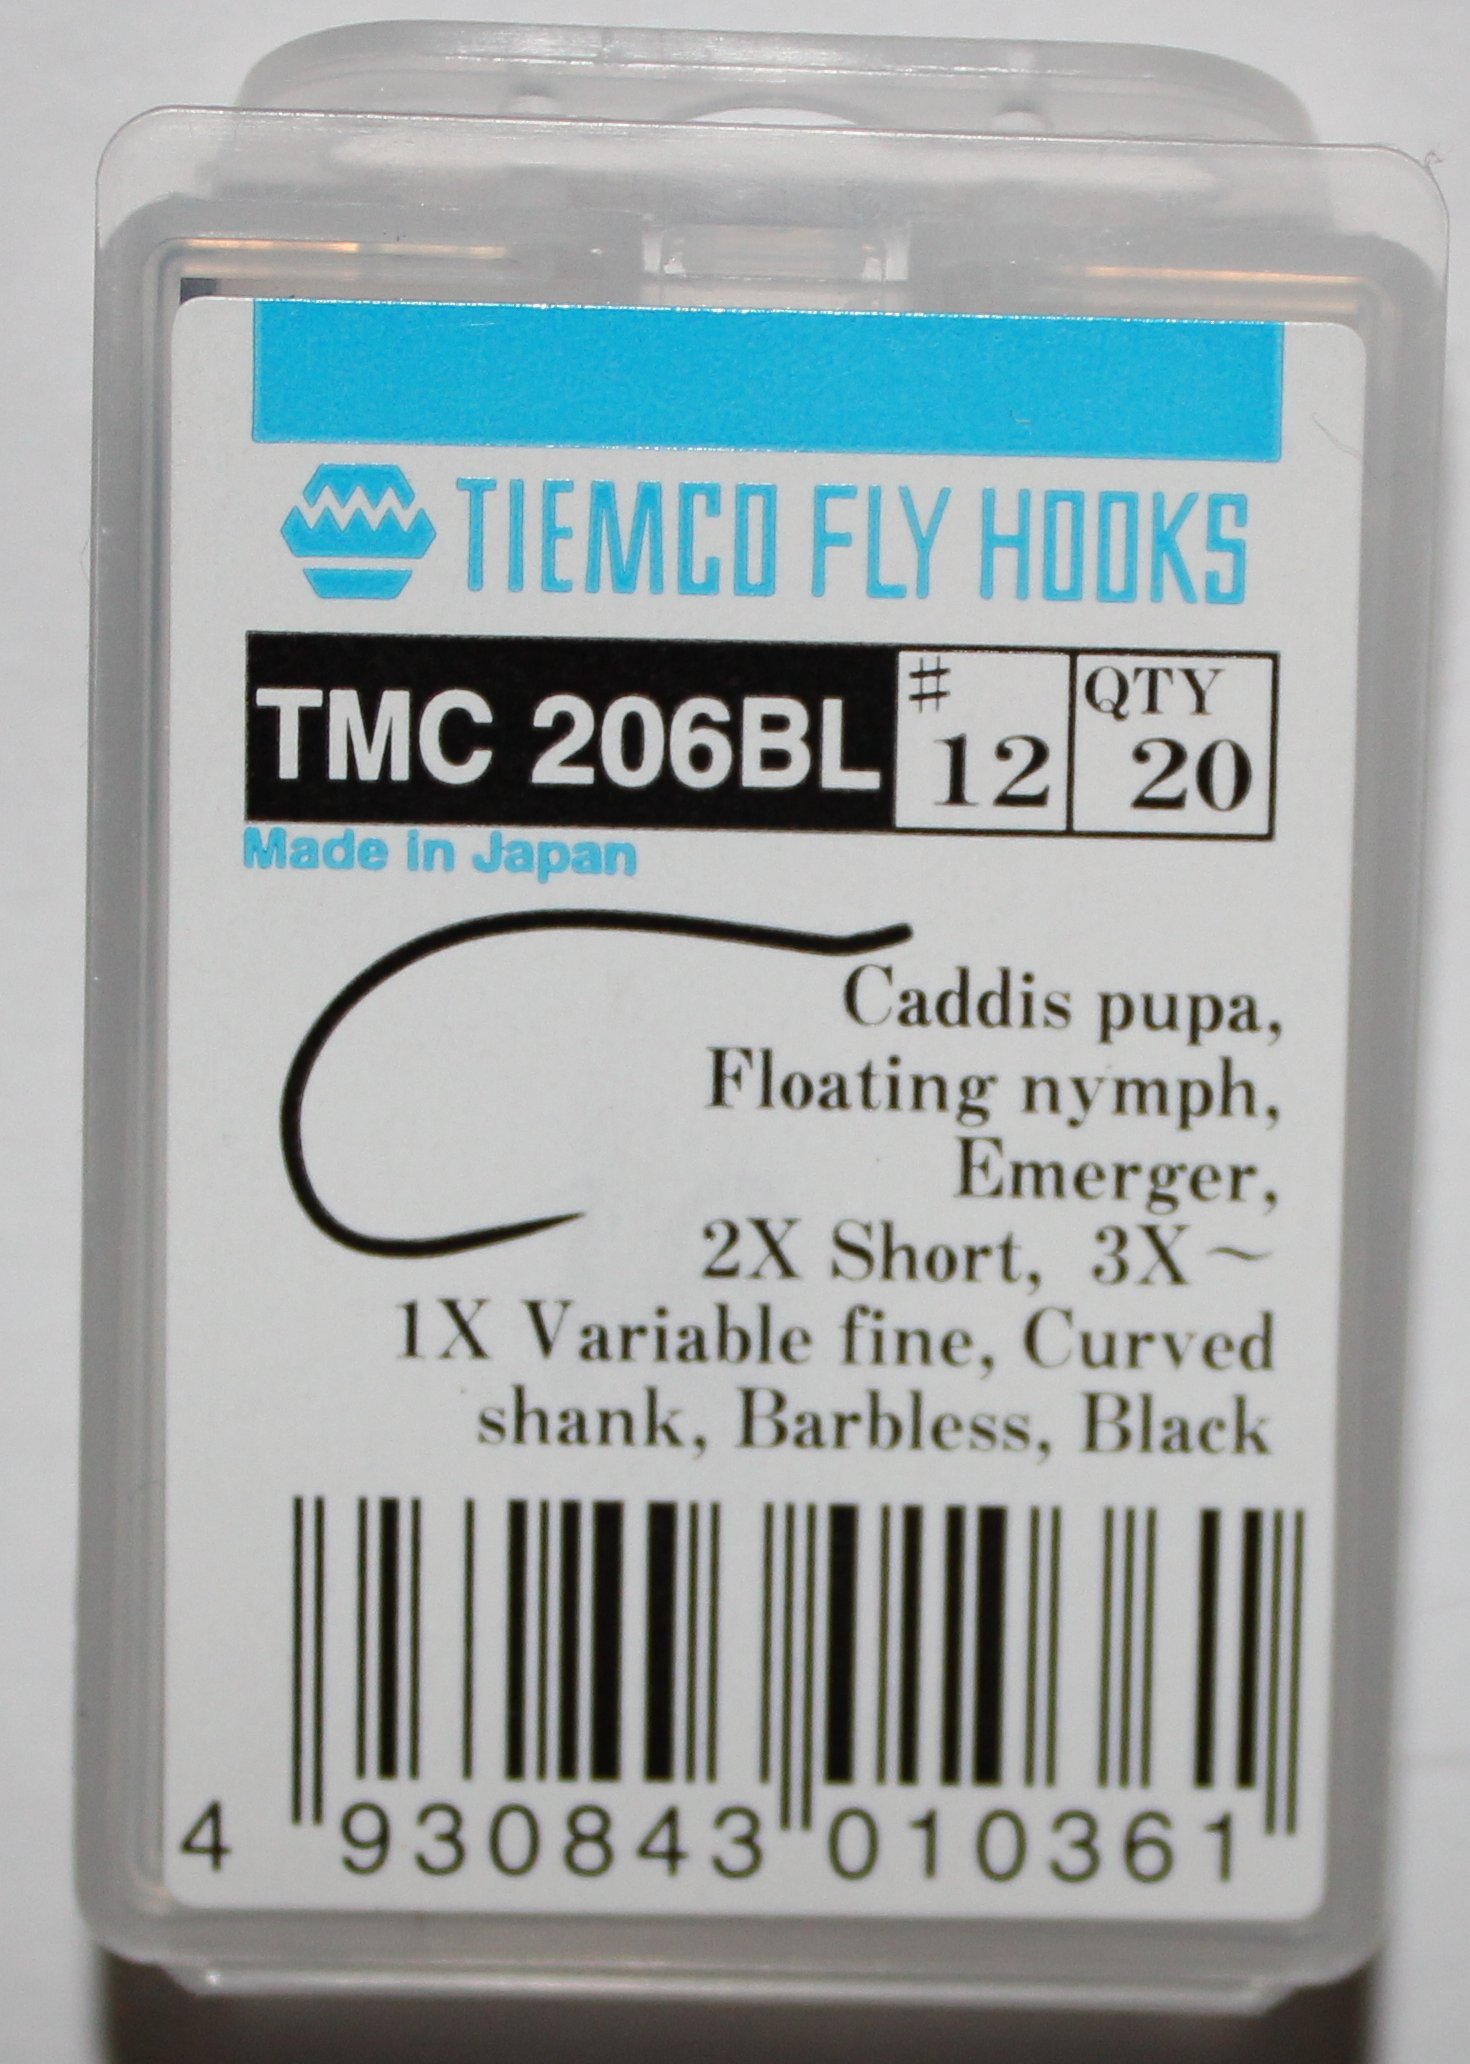 Anzuelos Tiemco TMC 206 BL - Tienda pesca a mosca